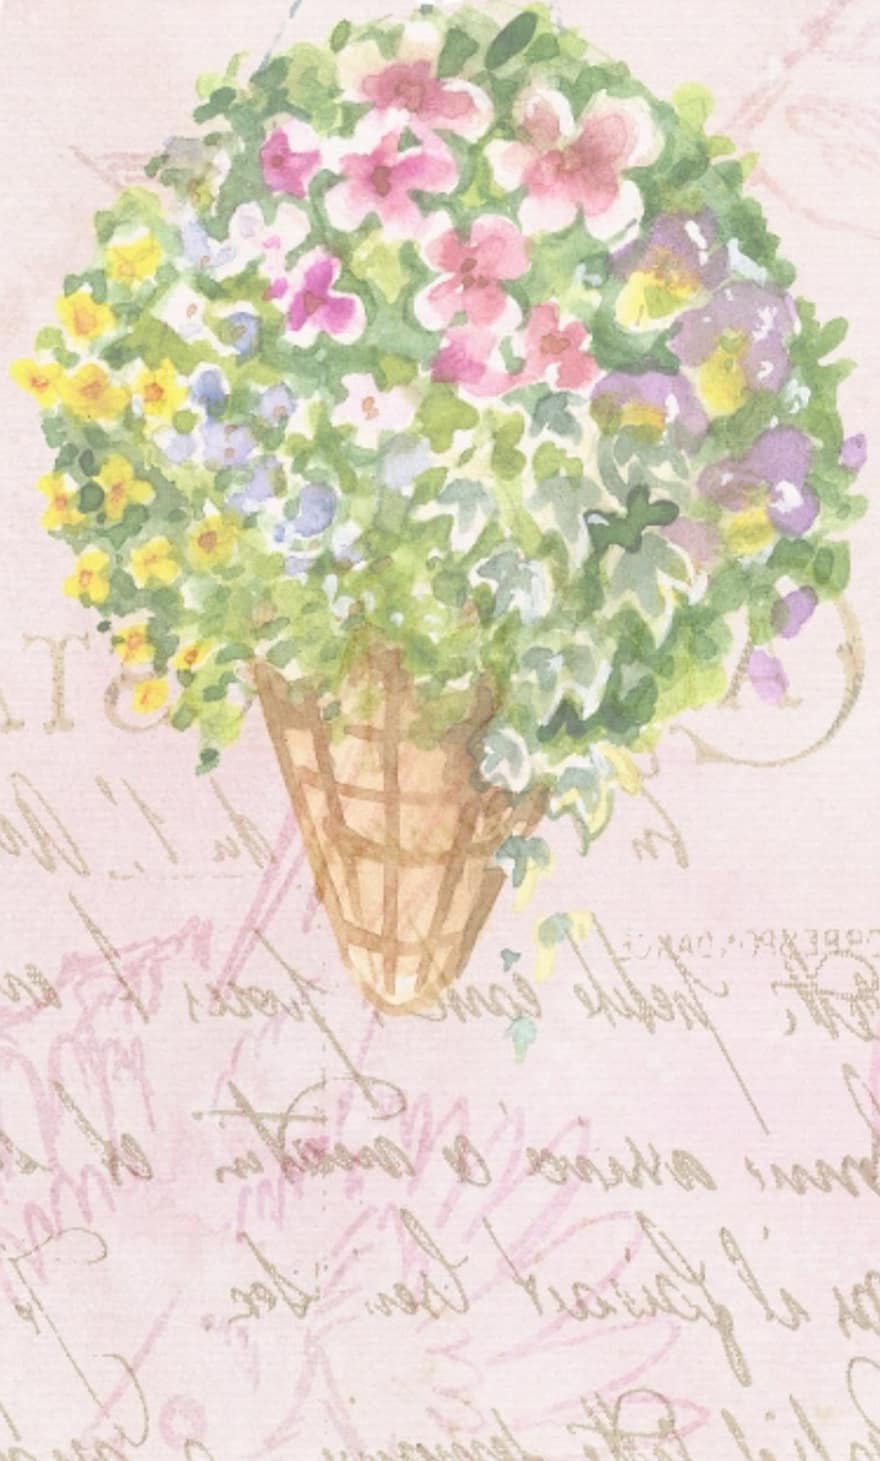 Rosa, Blume, Hintergrund, Sammelalbum, Blumen-, Natur, Blütenblatt, blühen, Garten, pinke Blumen, Design